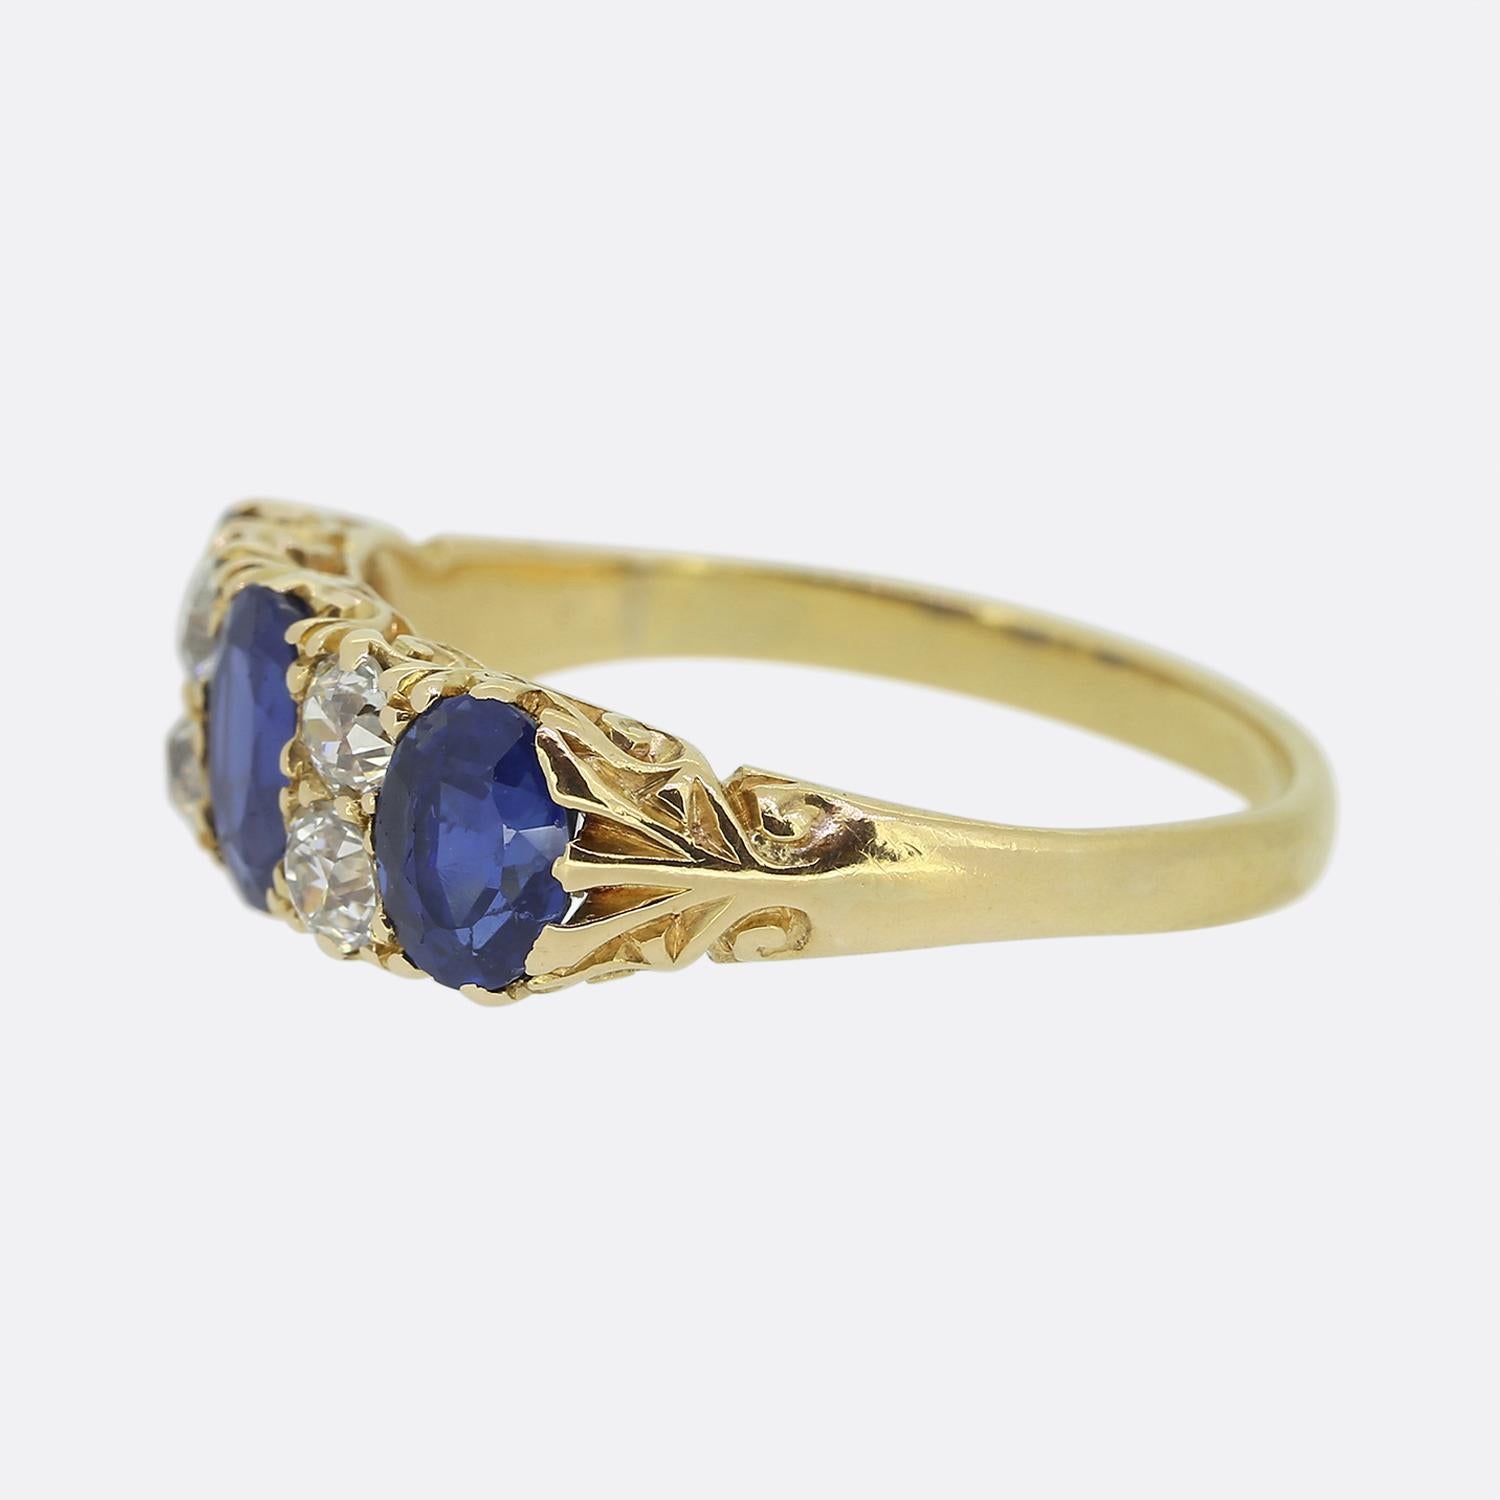 Hier haben wir einen wunderschönen Saphir- und Diamantring aus der Edwardianischen Ära. Der Ring ist aus 18 Karat Gelbgold gefertigt und besteht aus drei Saphiren, die durch vier strahlend weiße Diamanten im Altschliff getrennt sind. Die unerhitzten